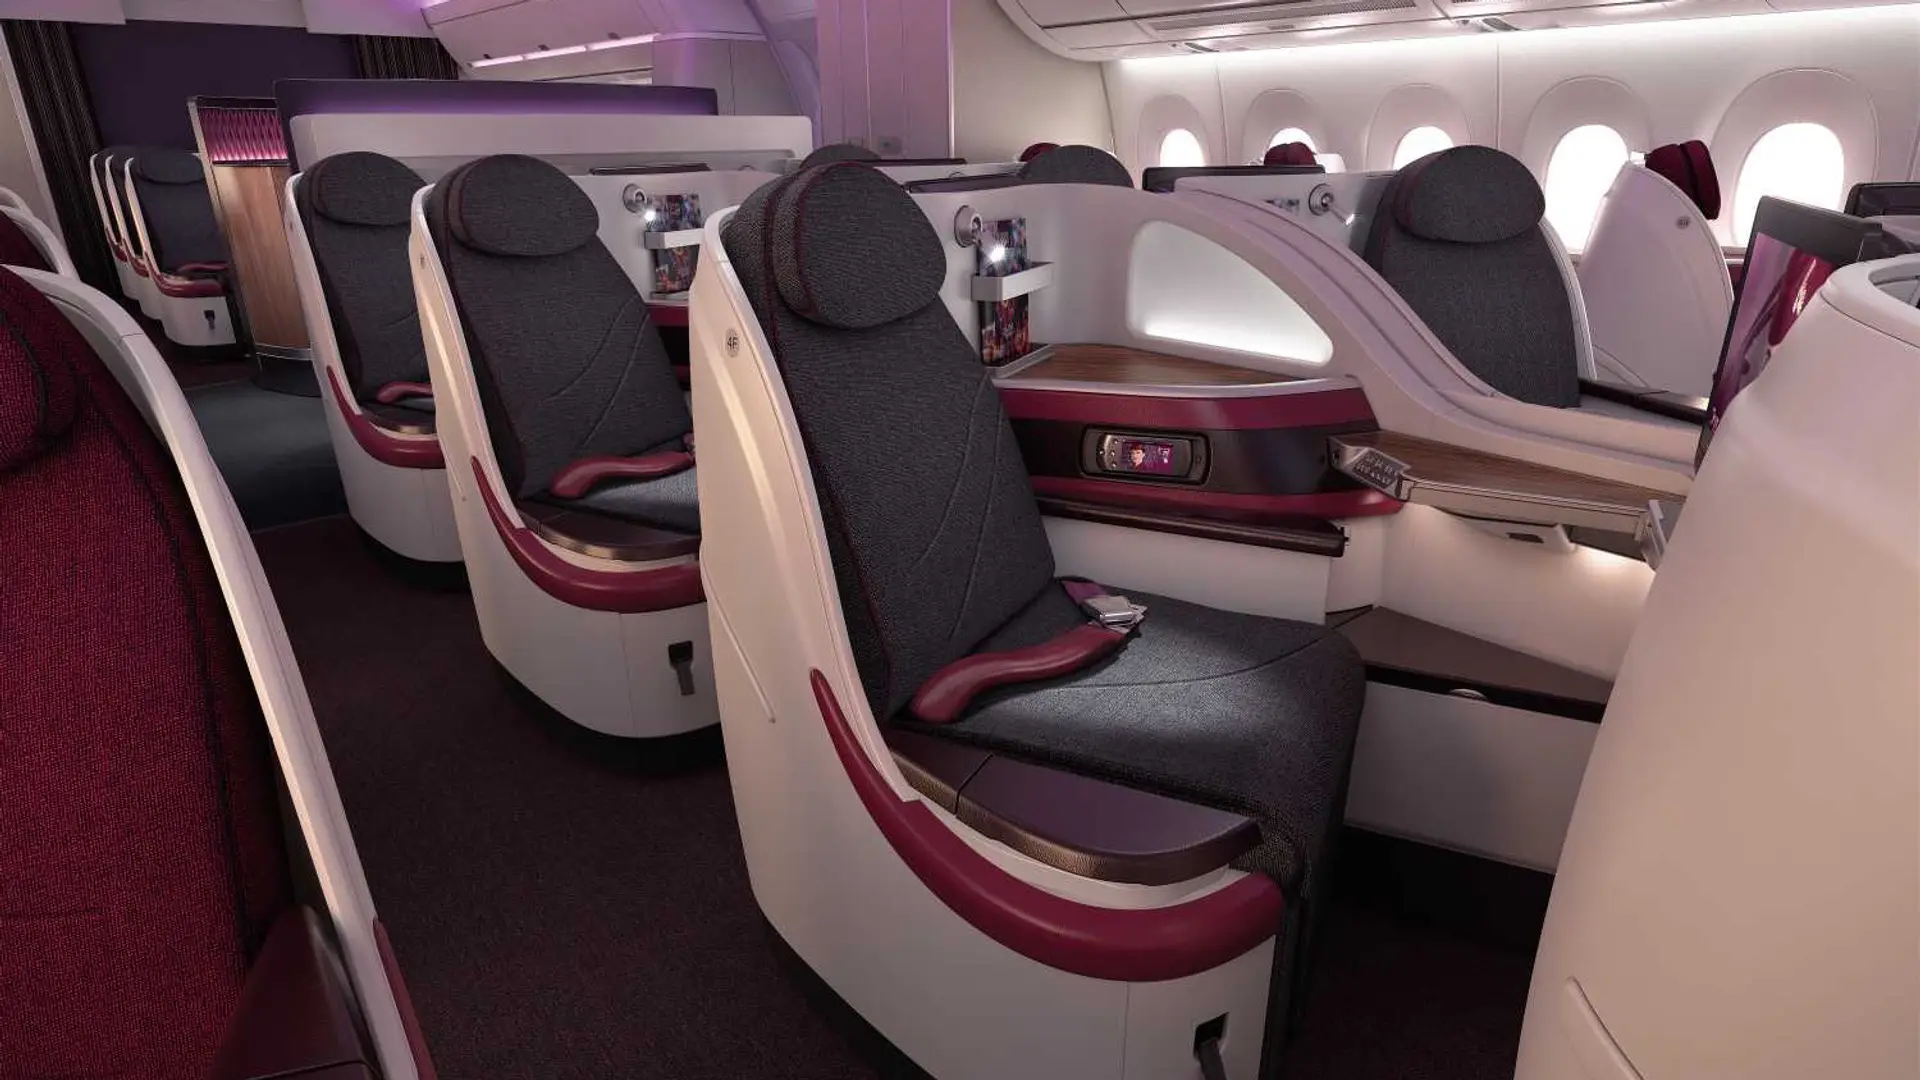 Airline review Cabin & Seat - Qatar Airways - 9